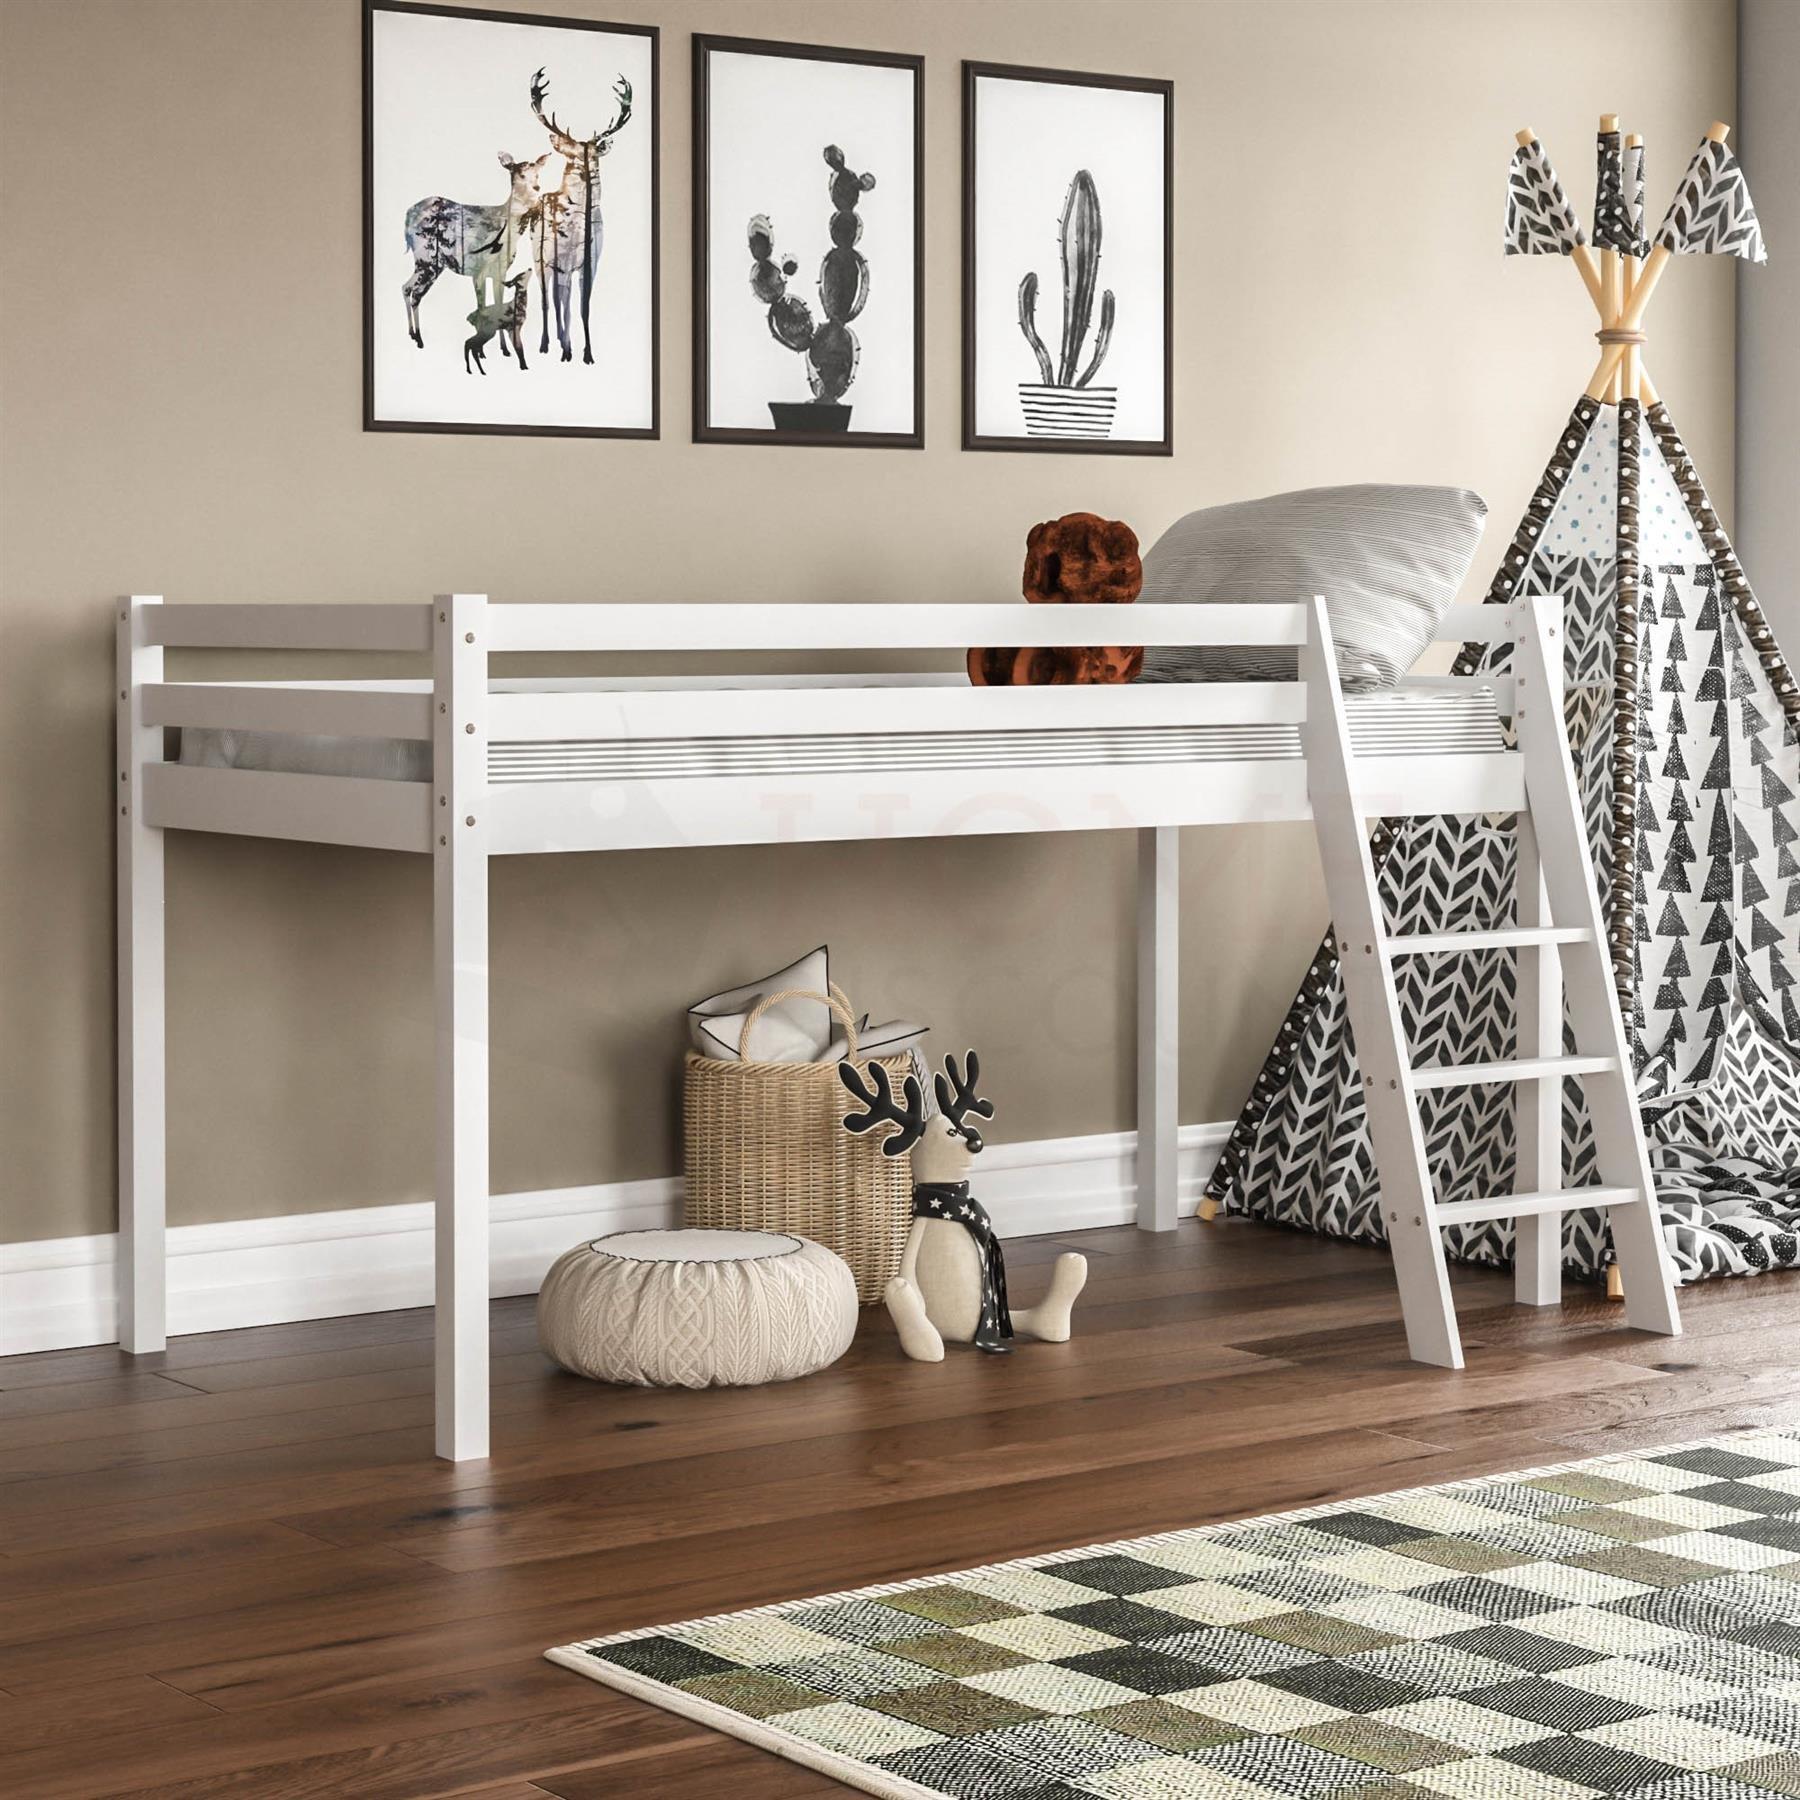 Vida Designs Sydney Bunk Bed Frame Bedroom Furniture